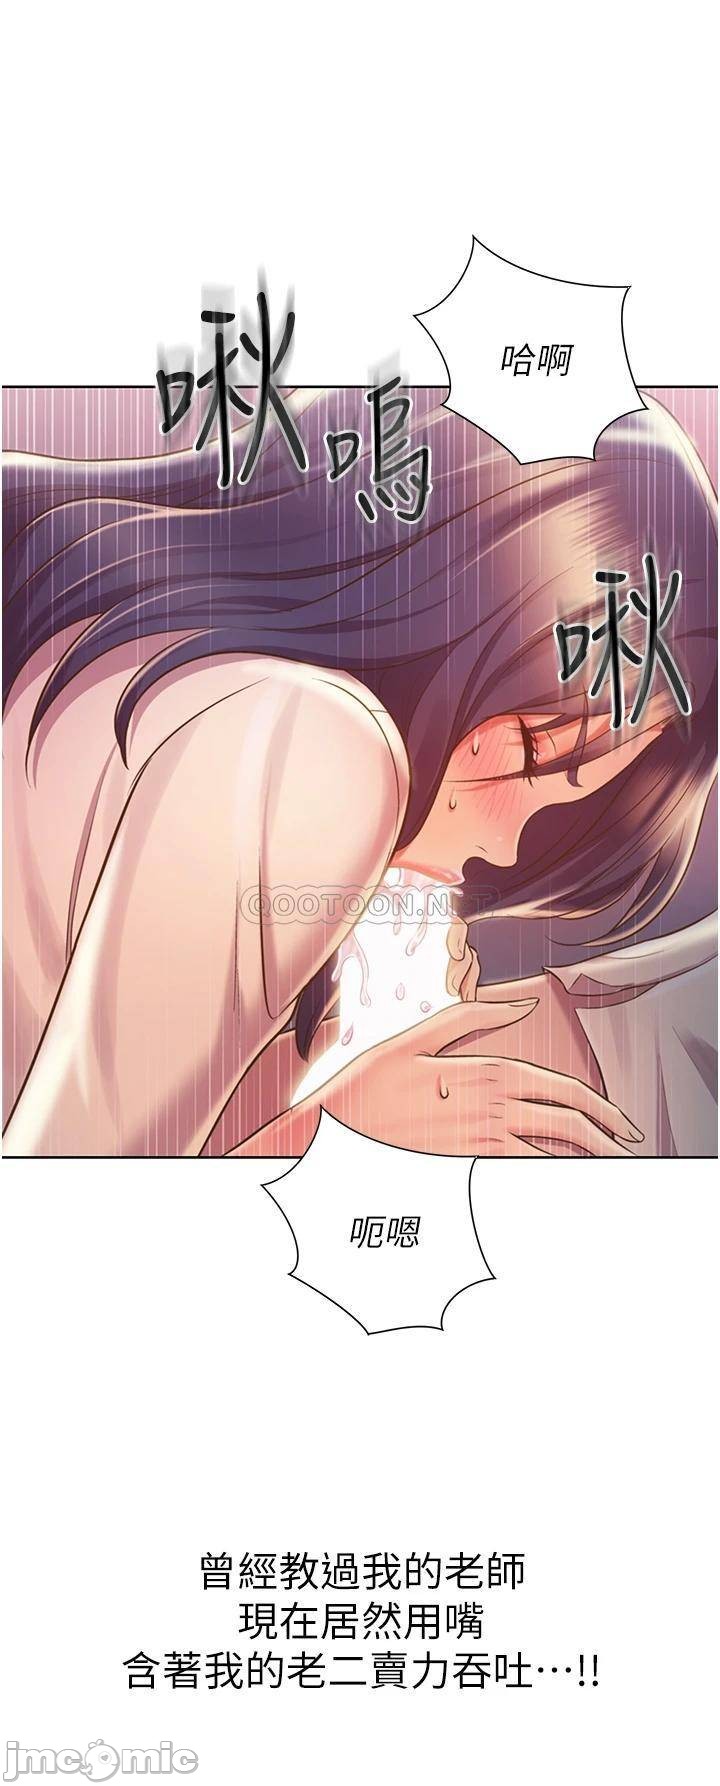 Read manga Her Taste Raw - Chapter 20 - 000296007f03fd96befcb - ManhwaXXL.com